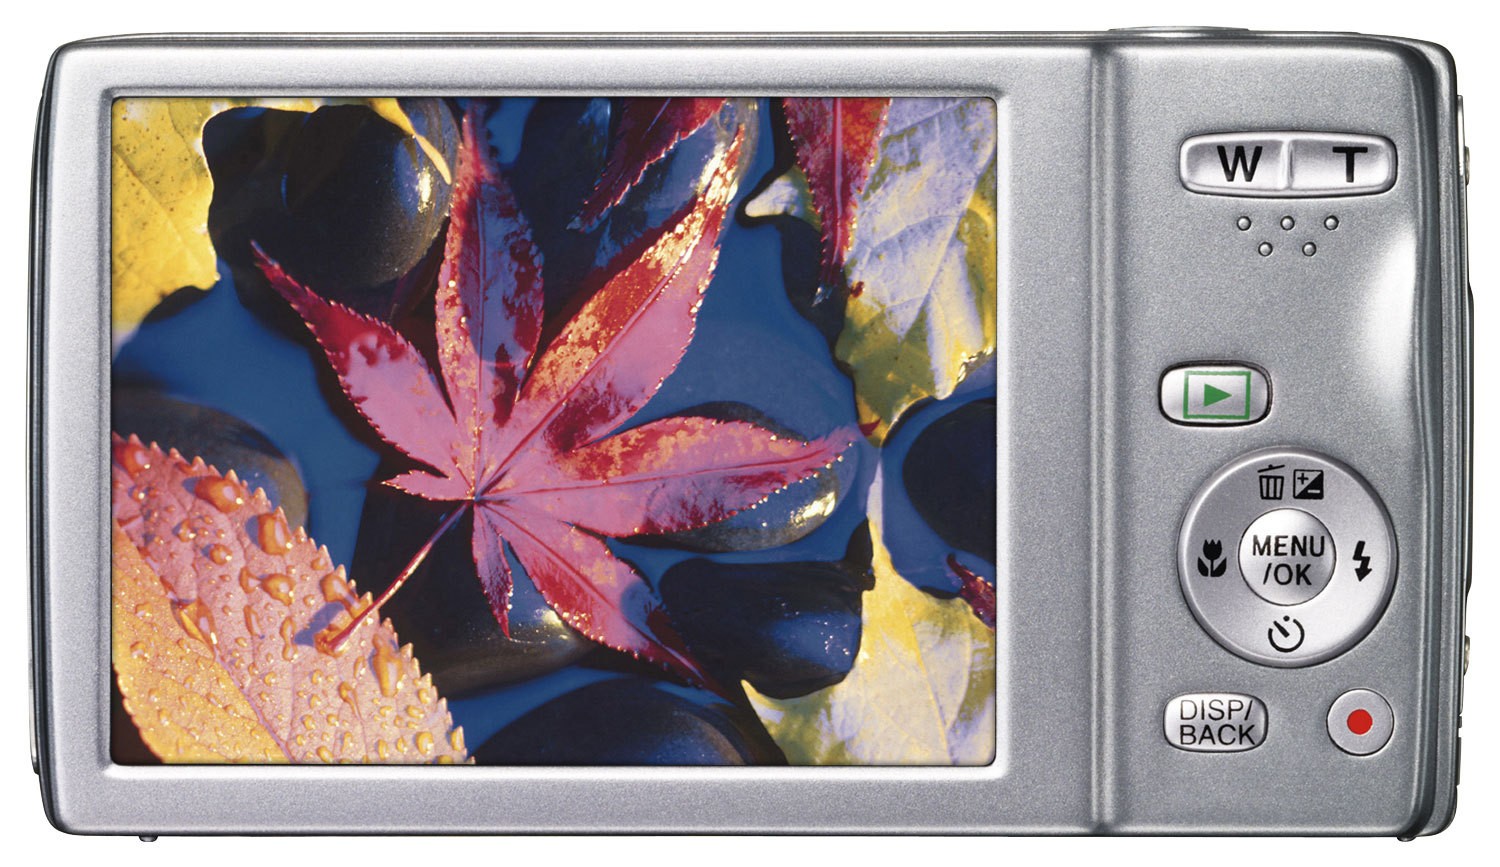 Ja verontschuldigen Uitschakelen Best Buy: Fujifilm FinePix JZ250 16.0-Megapixel Digital Camera Silver JZ250  SILVER